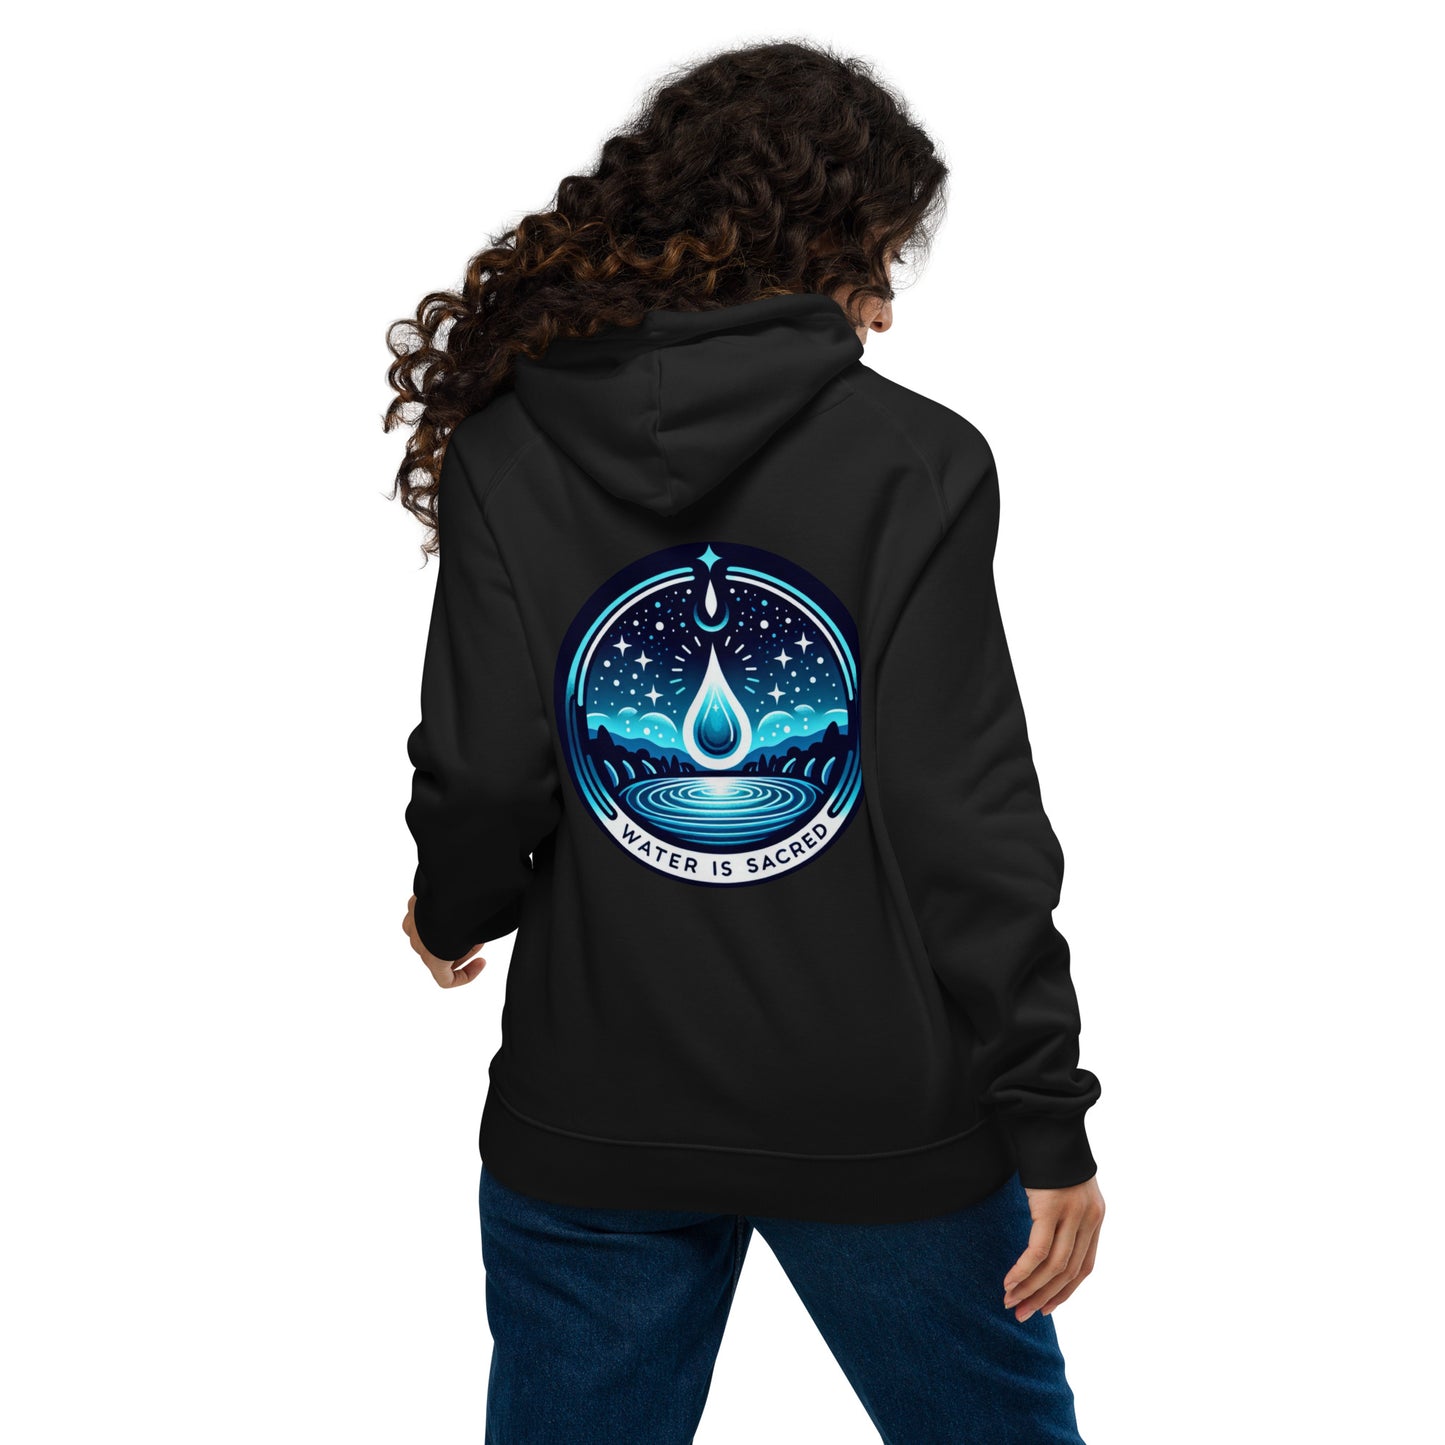 Water is Sacred- Unisex eco raglan hoodie